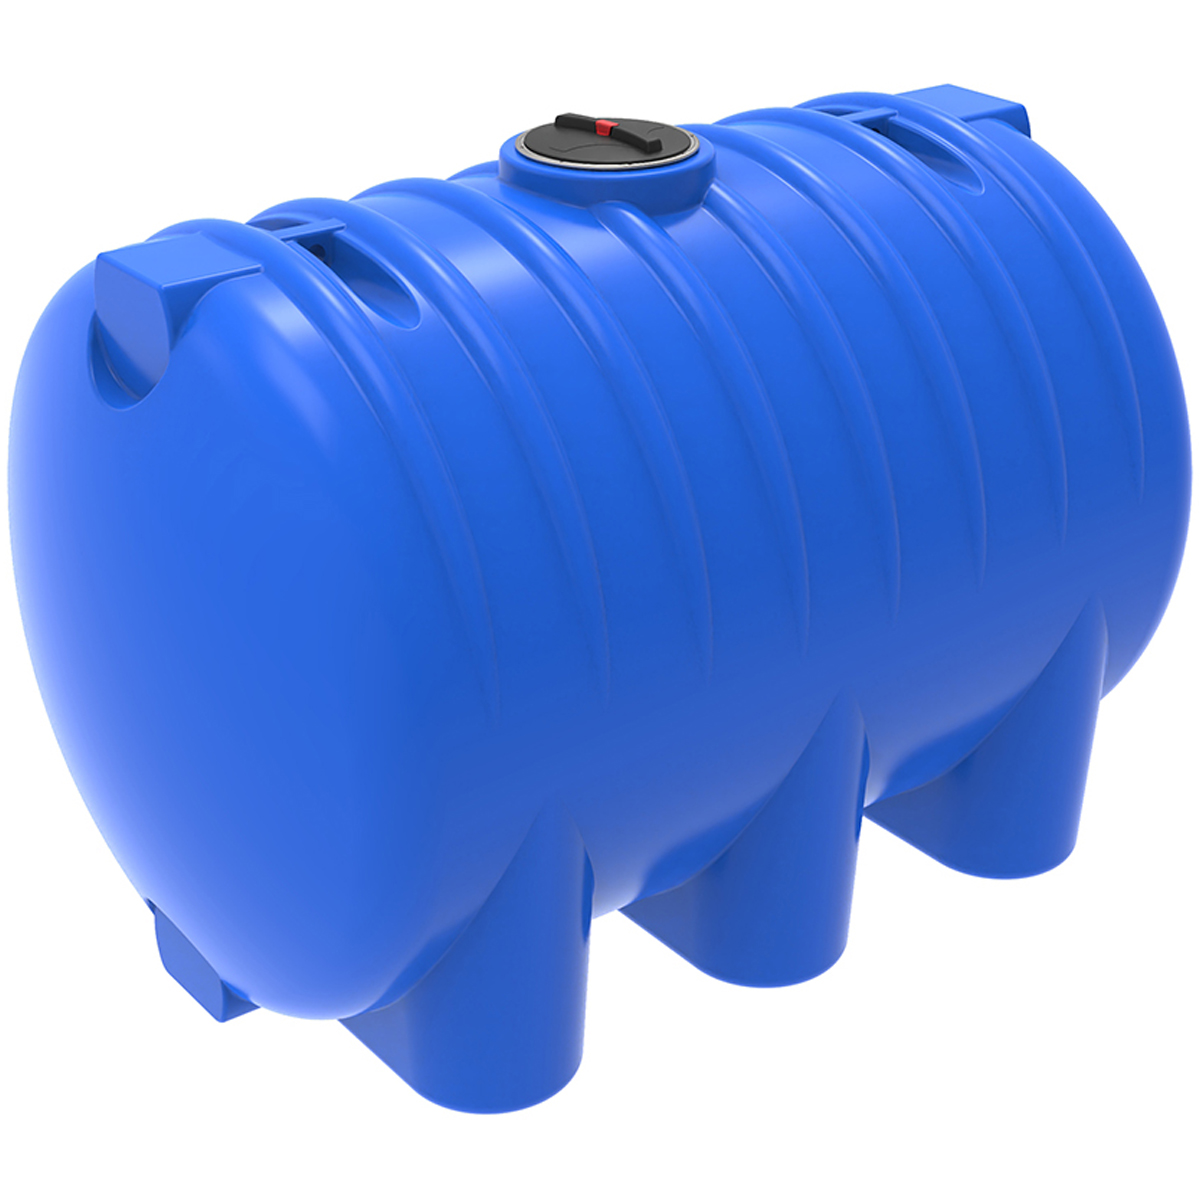 Пластиковая емкость ЭкоПром HR 8000 под плотность до 1,2 г/см3 (Синий) 0